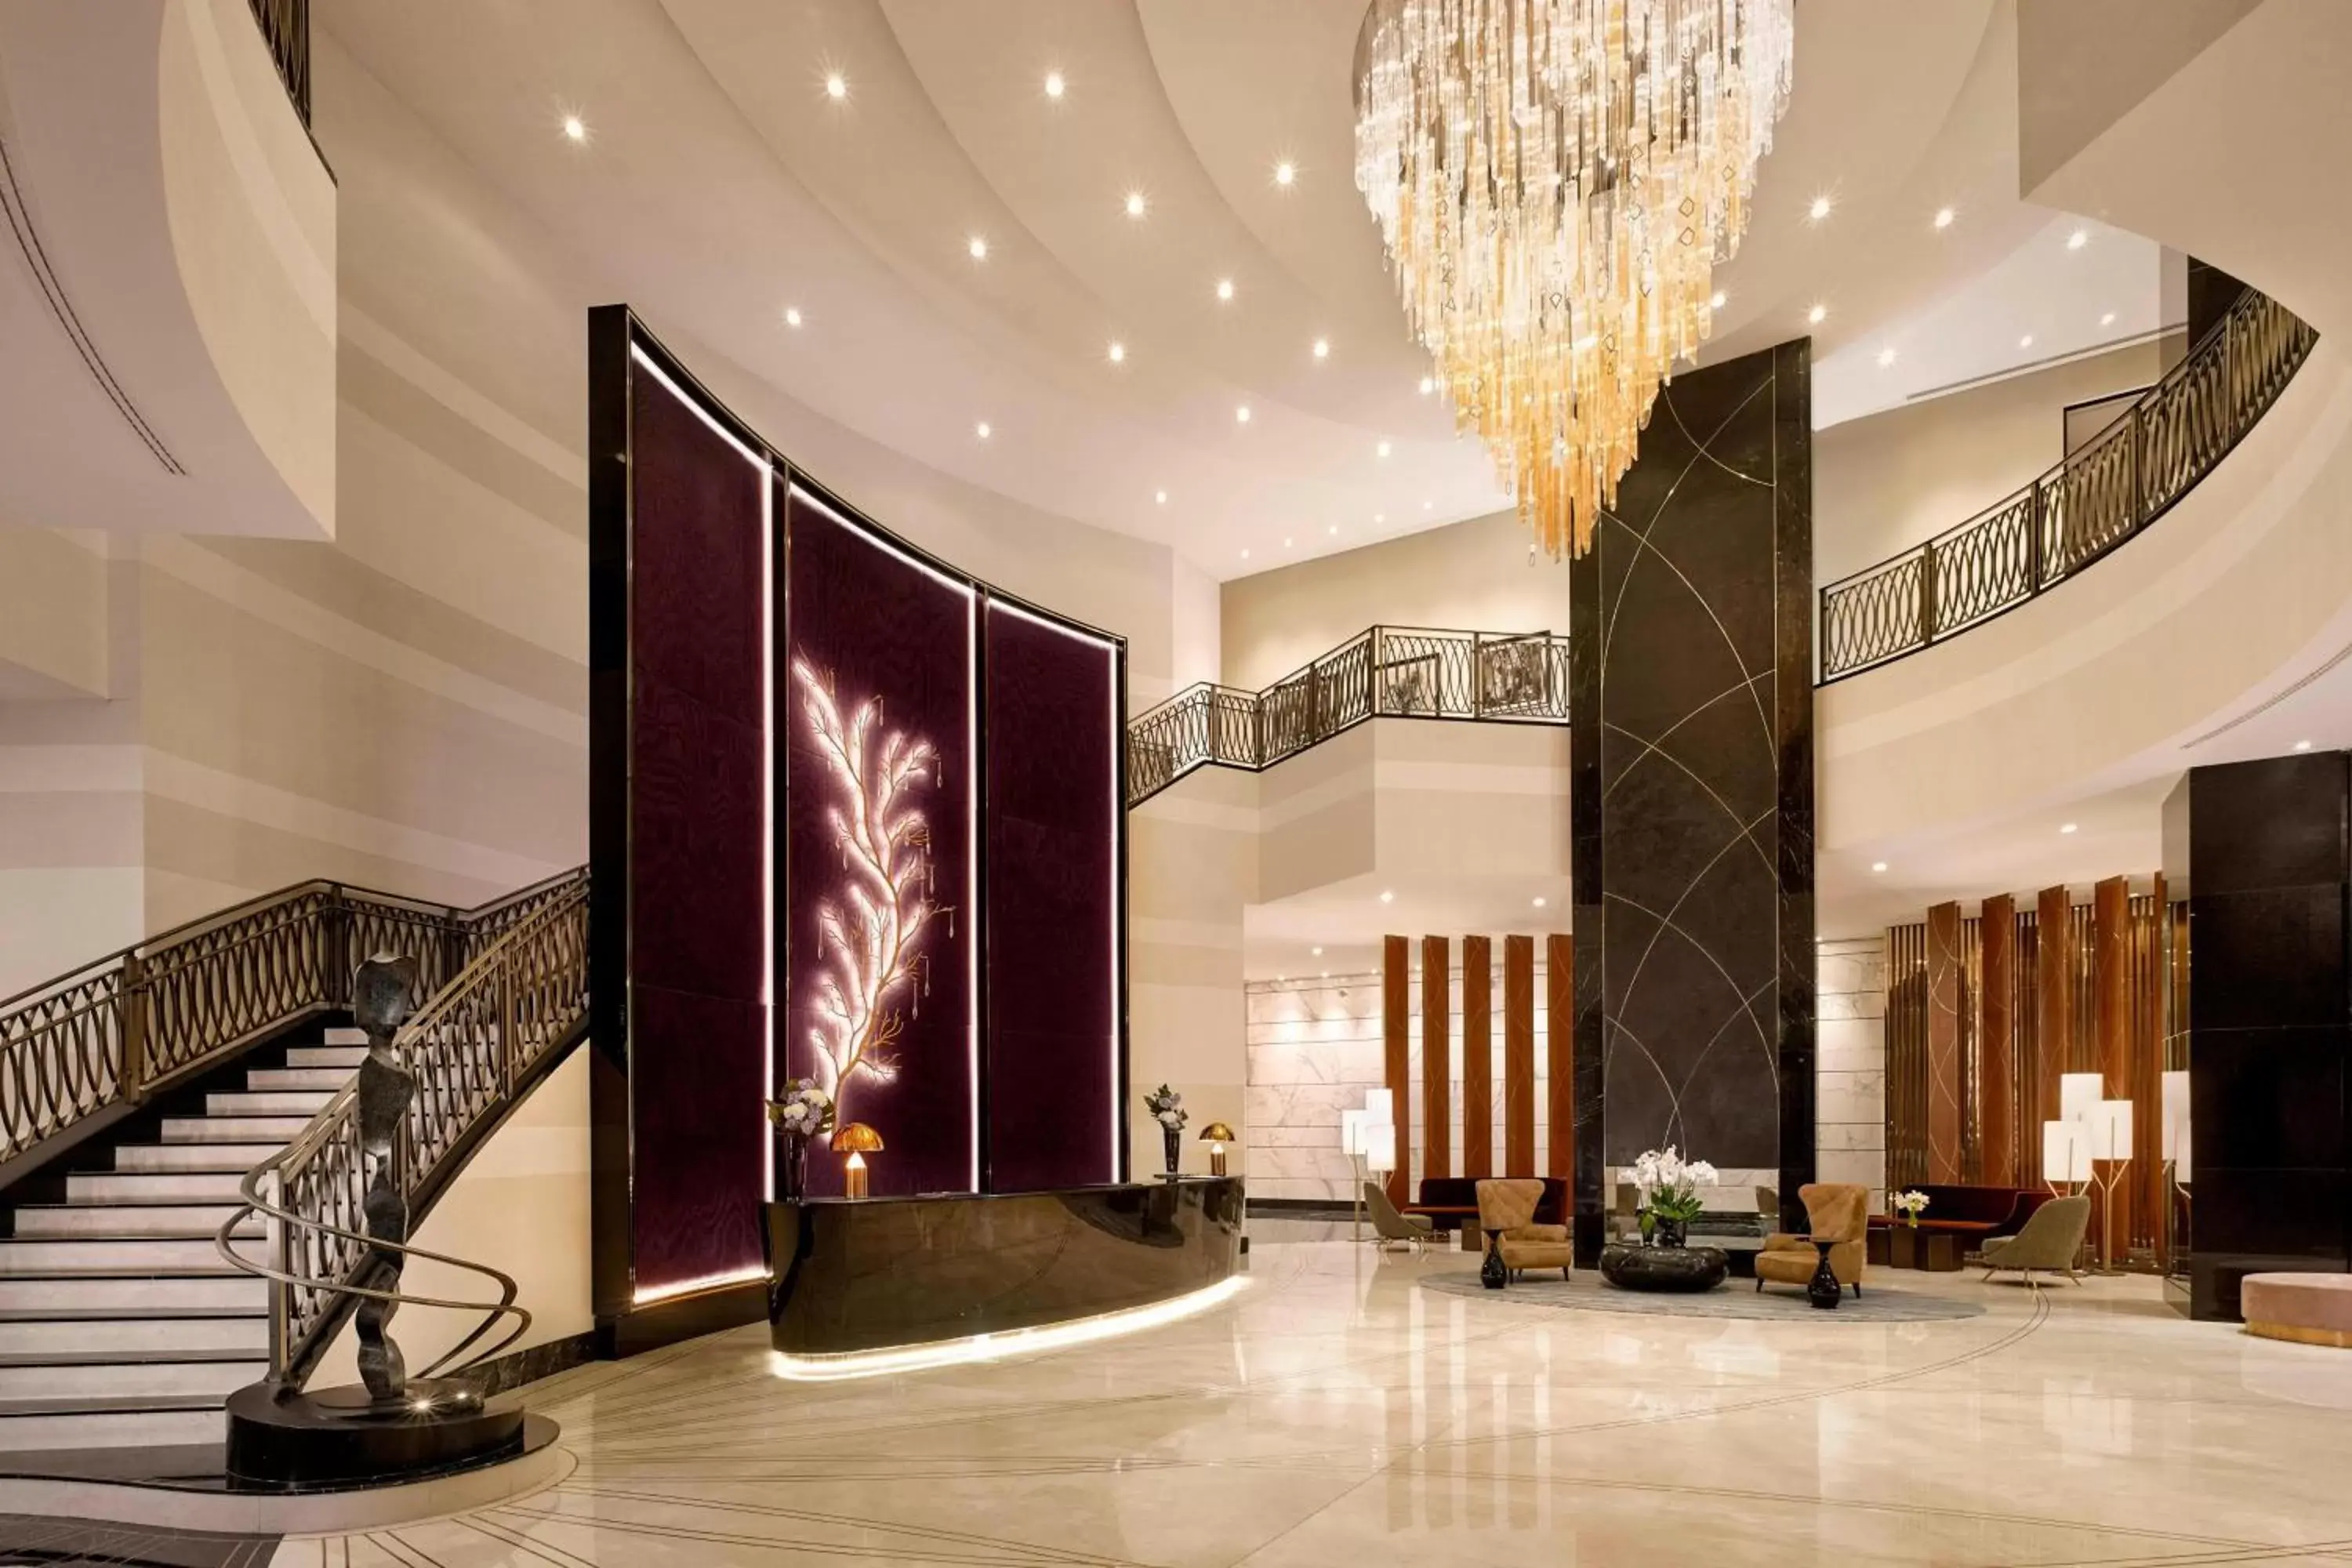 Lobby or reception, Lobby/Reception in The Ritz-Carlton, Astana